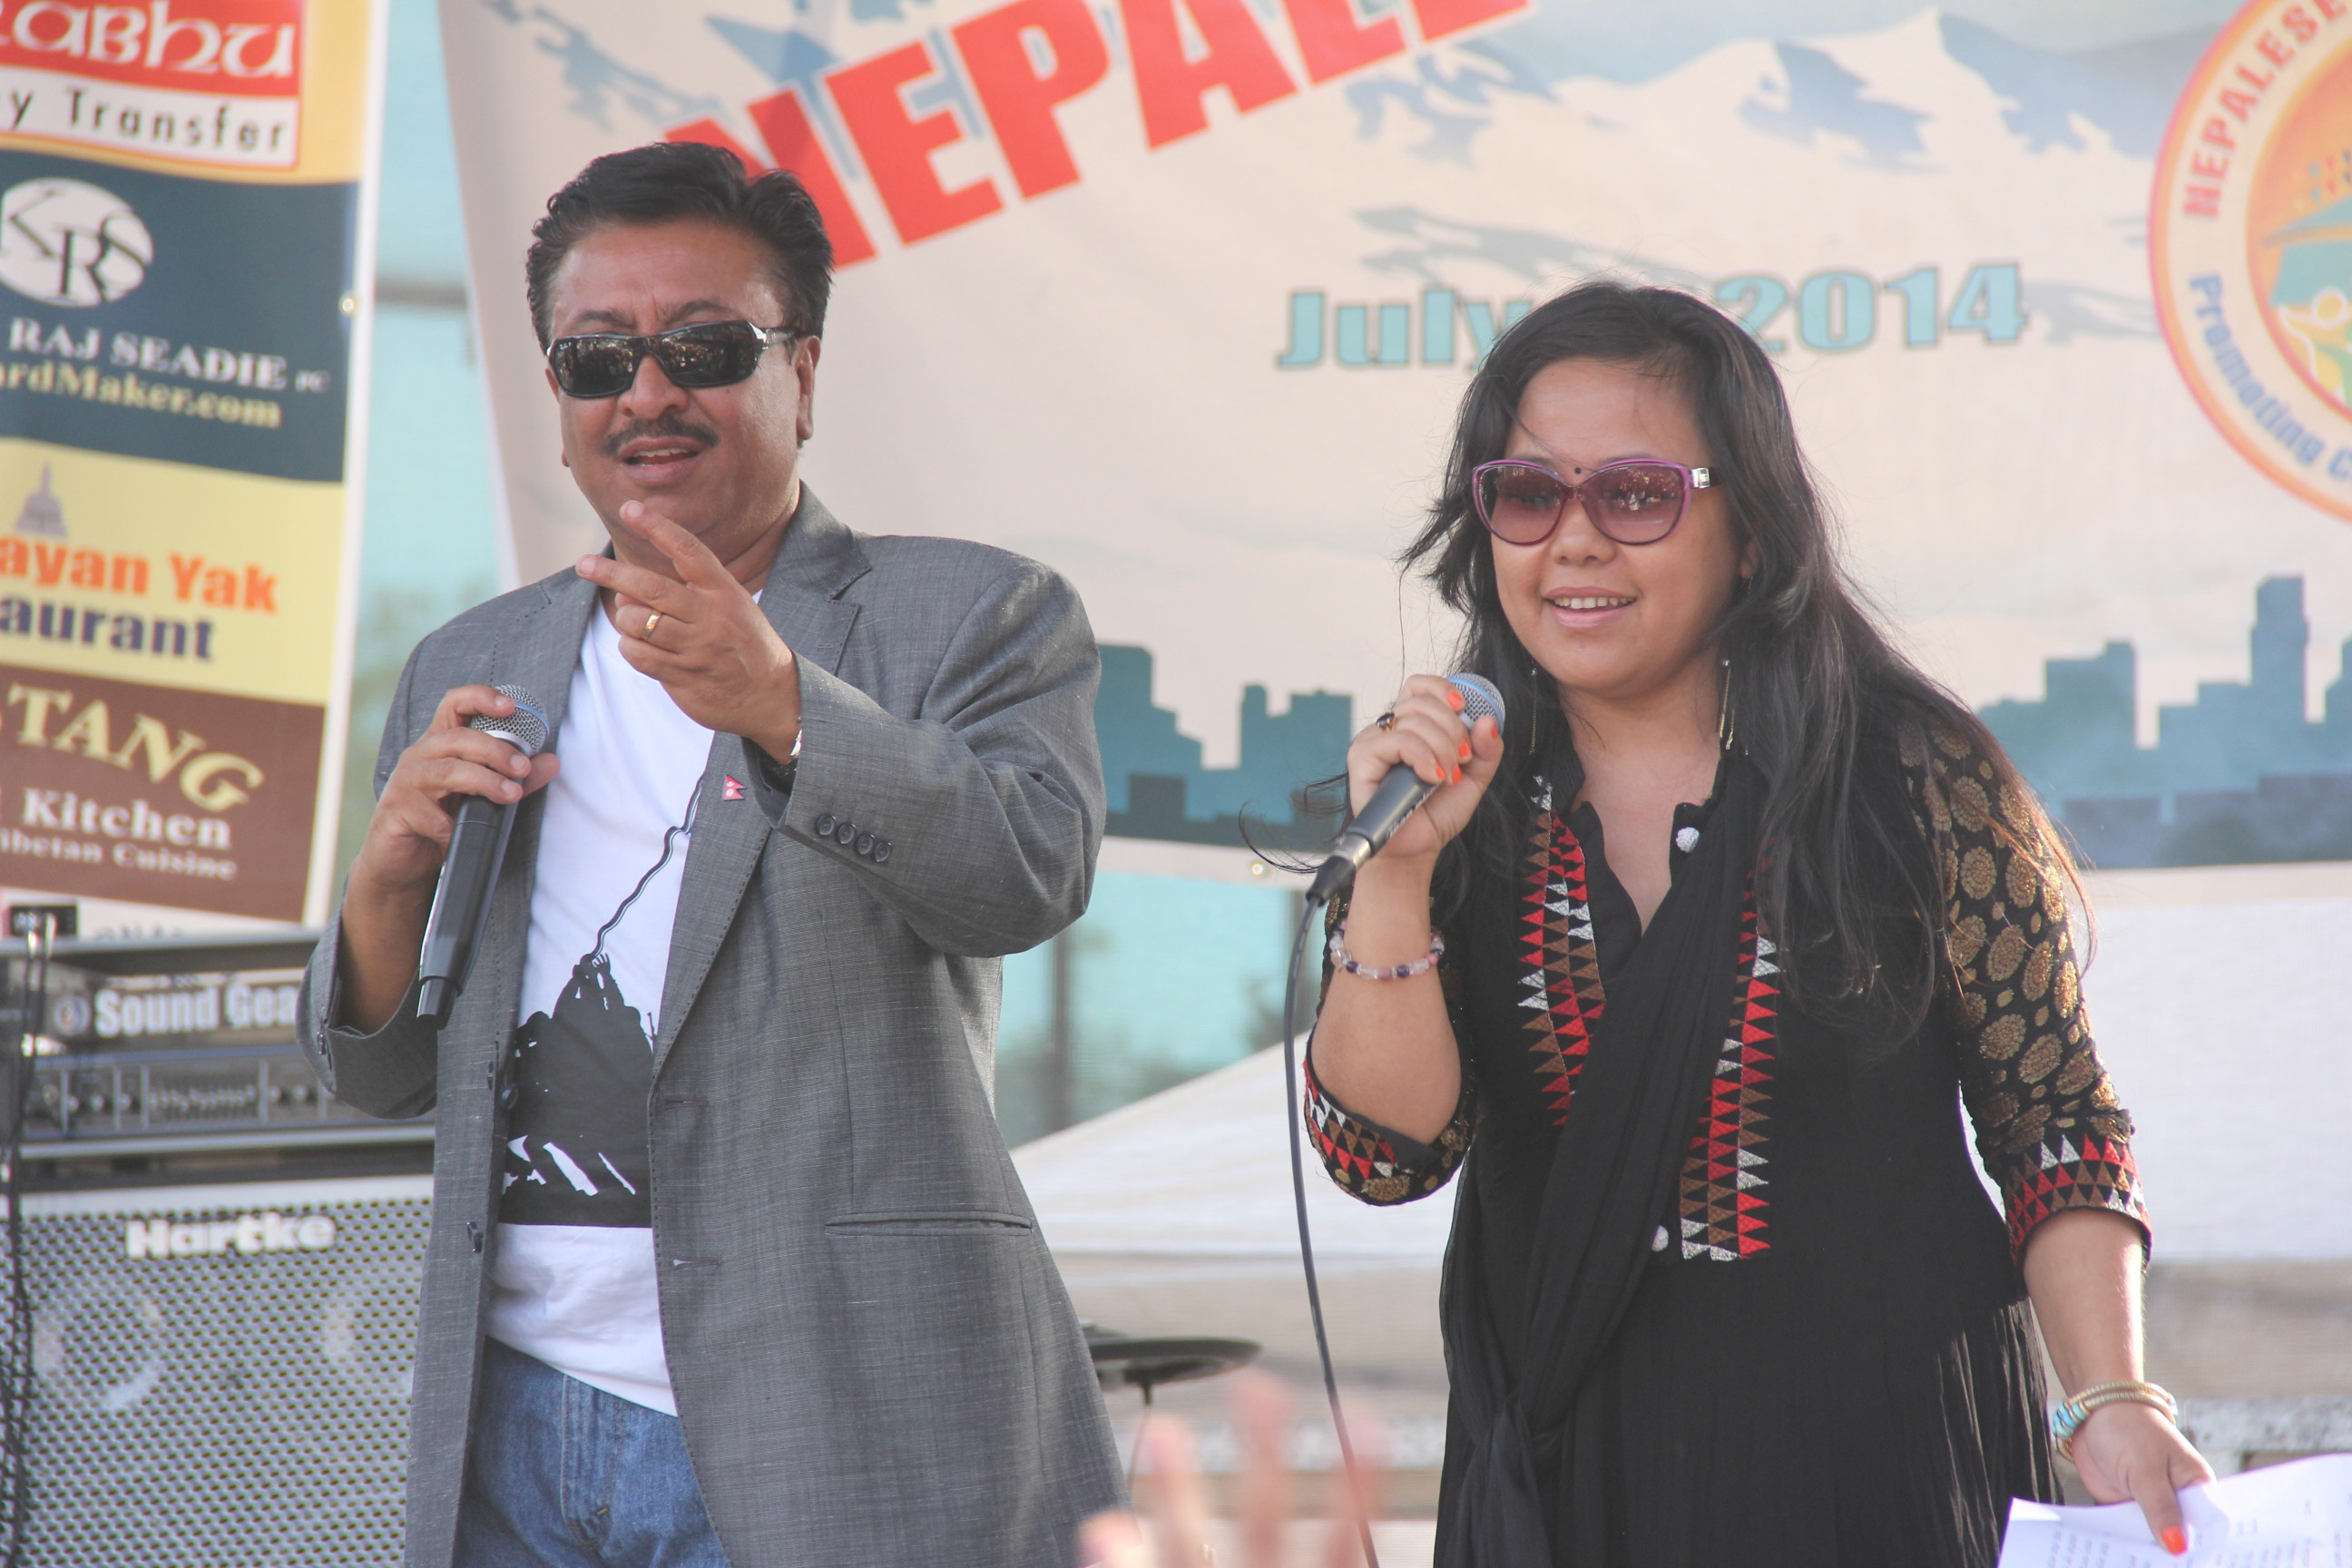 Nepali Mela New York City July 2014 photo: Bhola Acharya